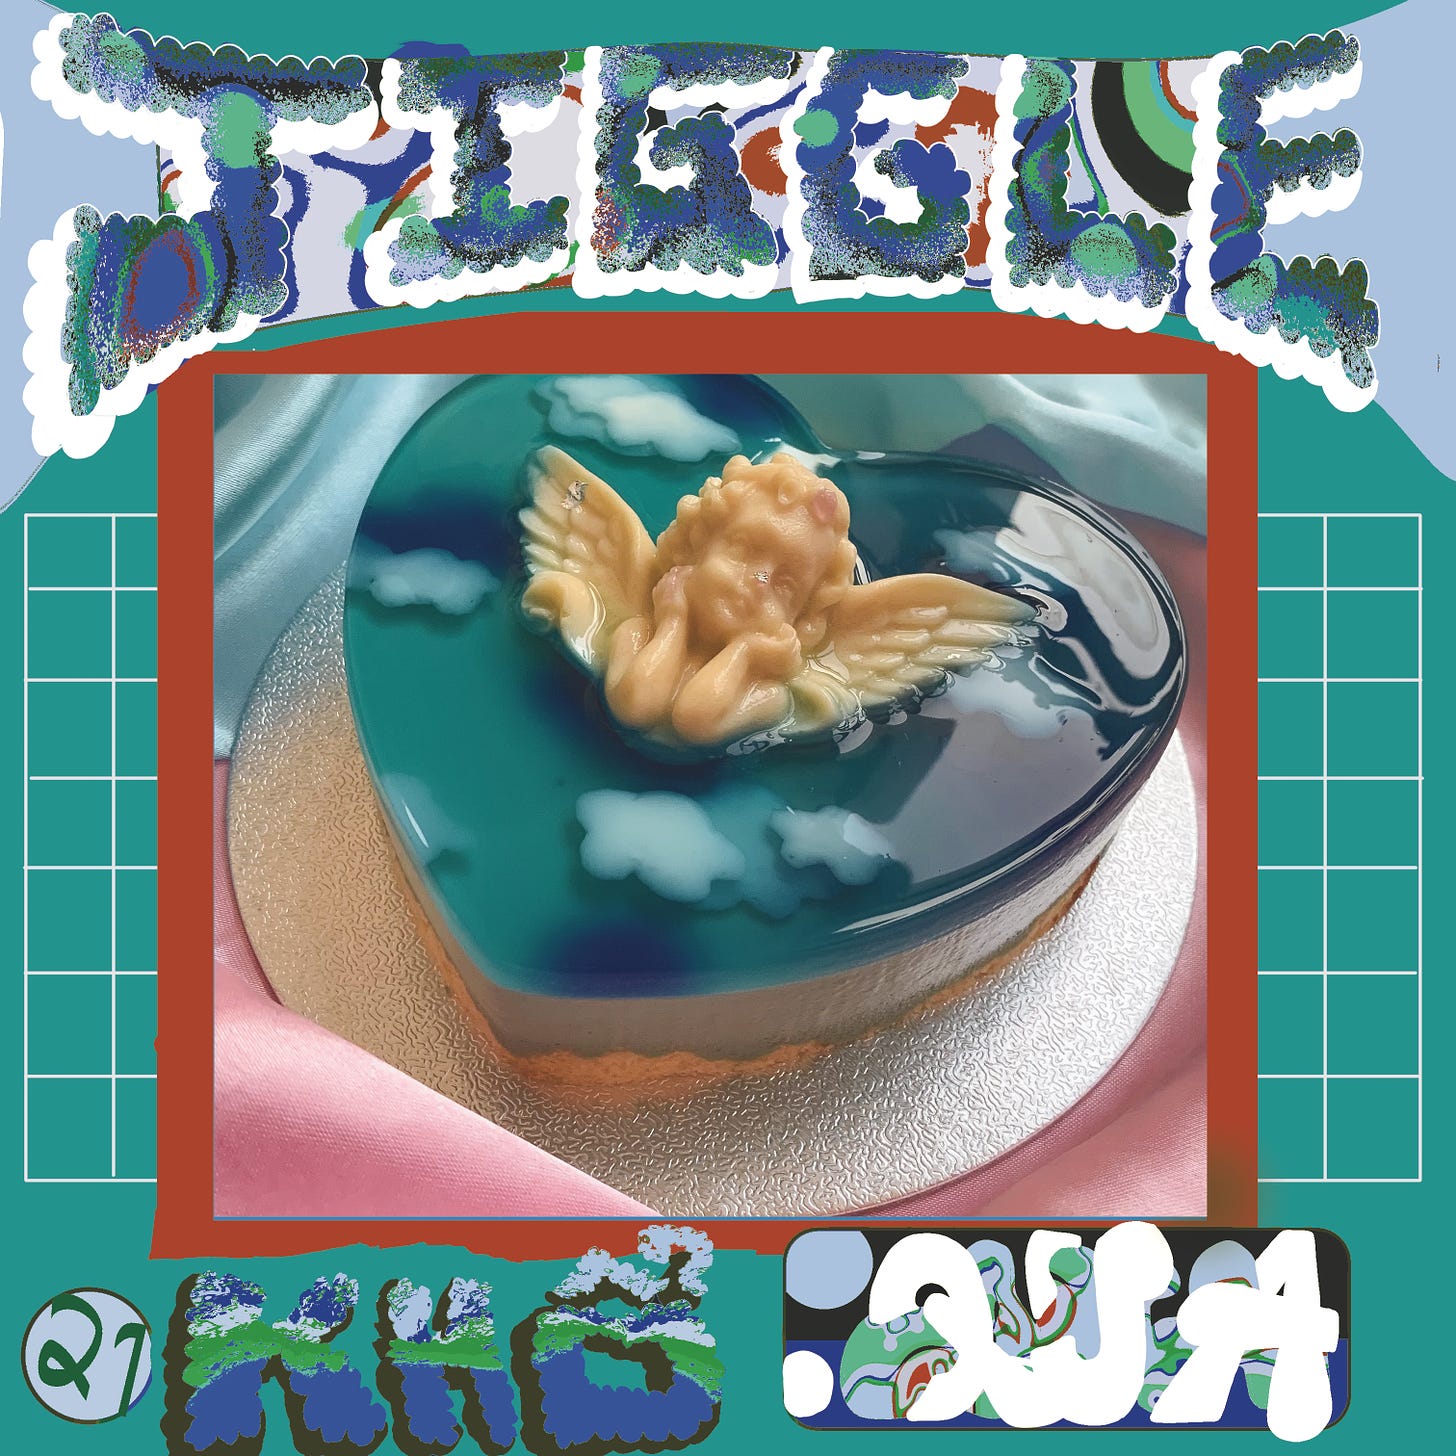 JIGGLE 2 by Corey Jennings, photo of jelly cake courtesy of Murder Cake, 2020